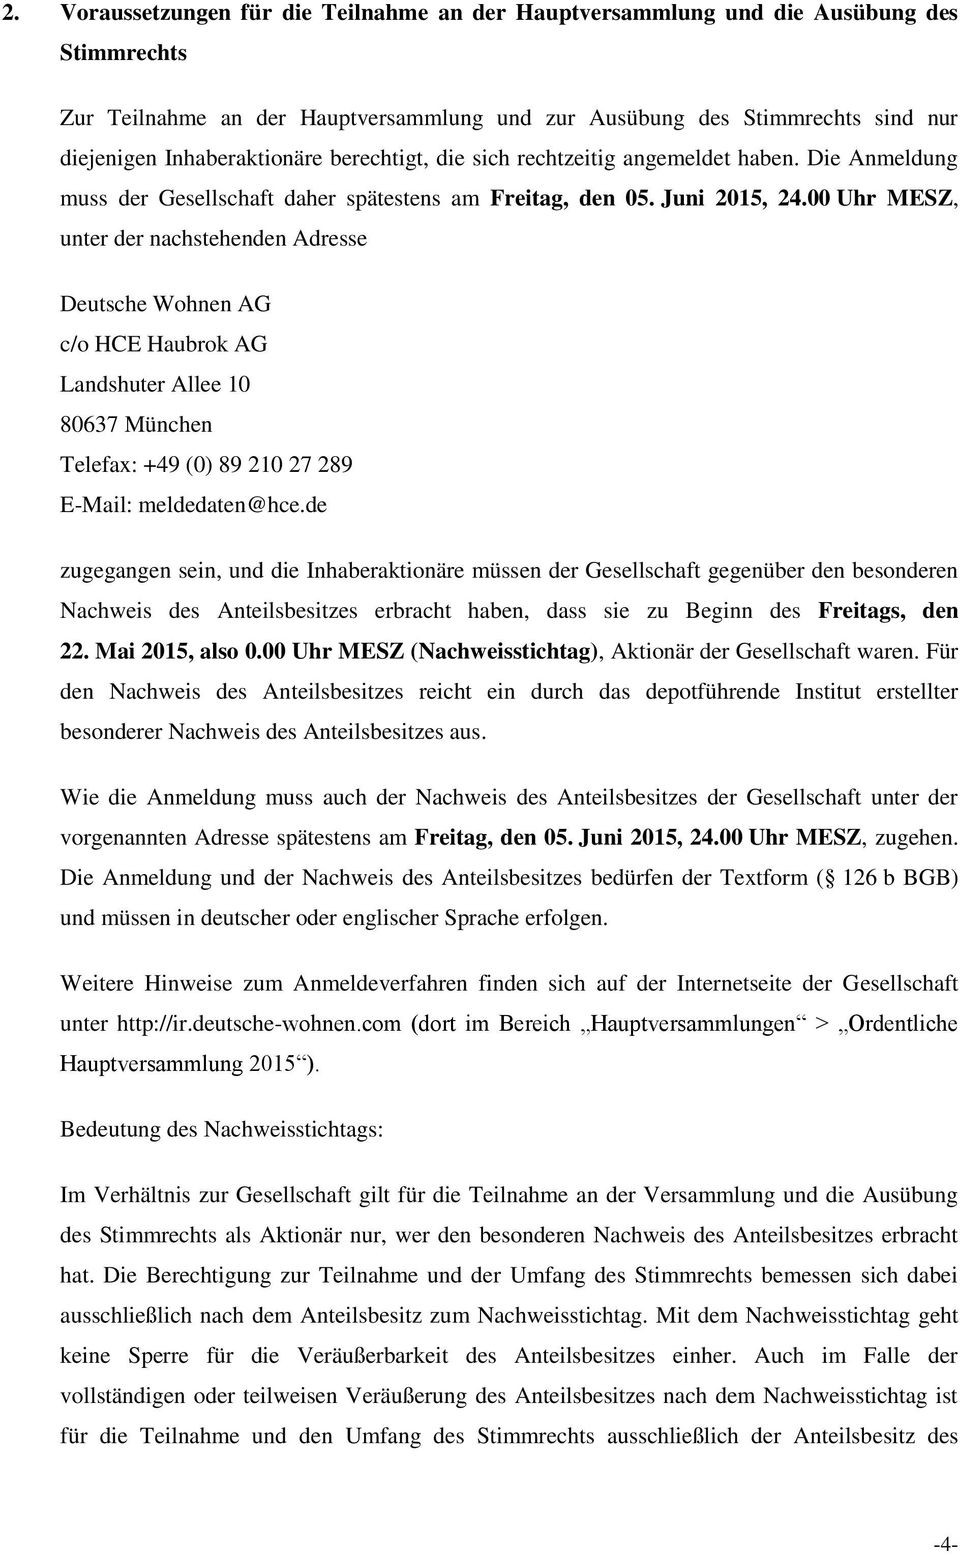 00 Uhr MESZ, unter der nachstehenden Adresse c/o HCE Haubrok AG Landshuter Allee 10 80637 München Telefax: +49 (0) 89 210 27 289 E-Mail: meldedaten@hce.